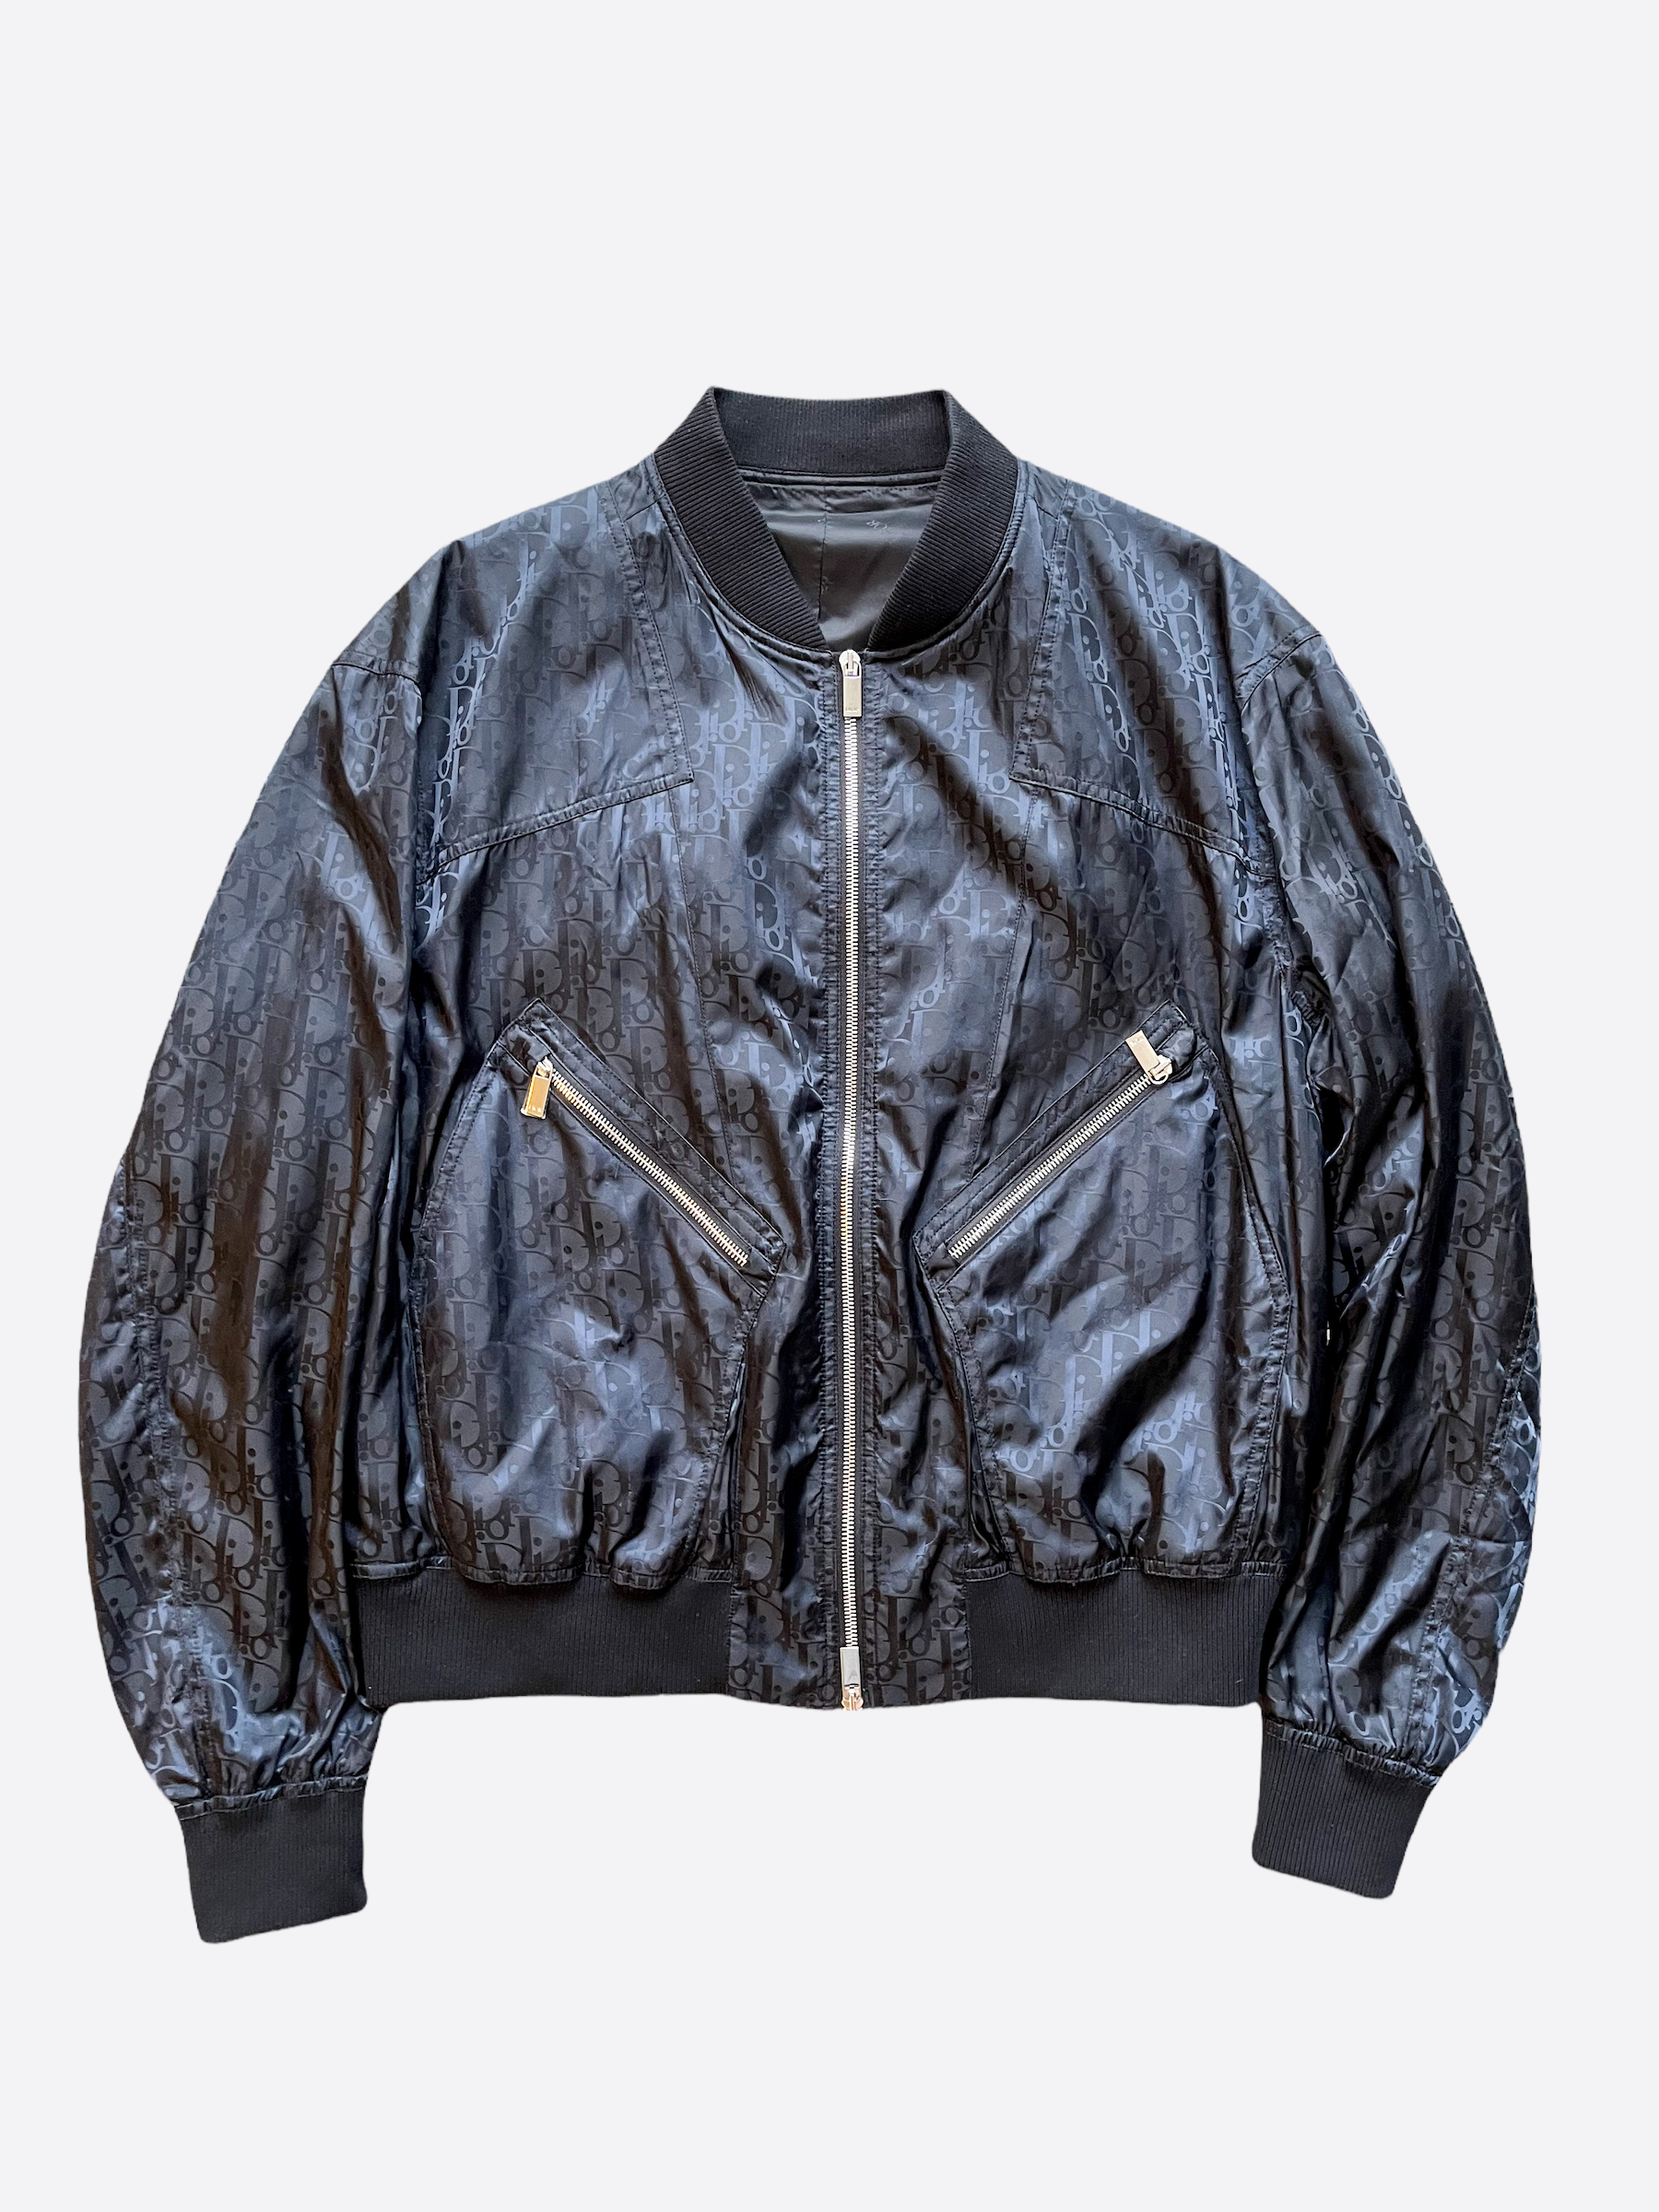 Christian Dior Oblique Bomber Jacket